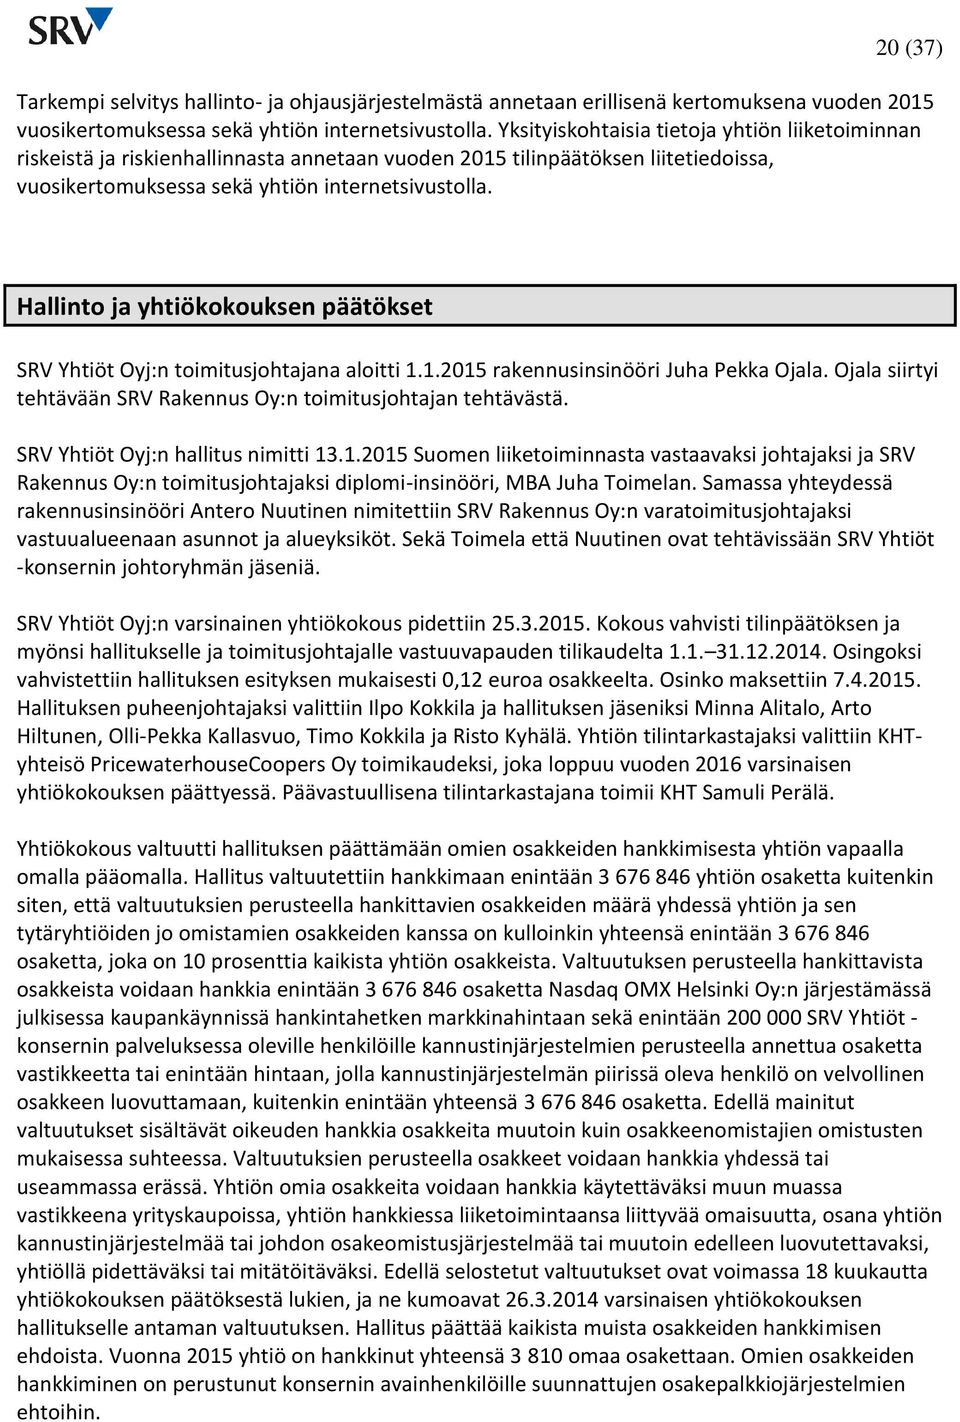 Hallinto ja yhtiökokouksen päätökset SRV Yhtiöt Oyj:n toimitusjohtajana aloitti 1.1. rakennusinsinööri Juha Pekka Ojala. Ojala siirtyi tehtävään SRV Rakennus Oy:n toimitusjohtajan tehtävästä.